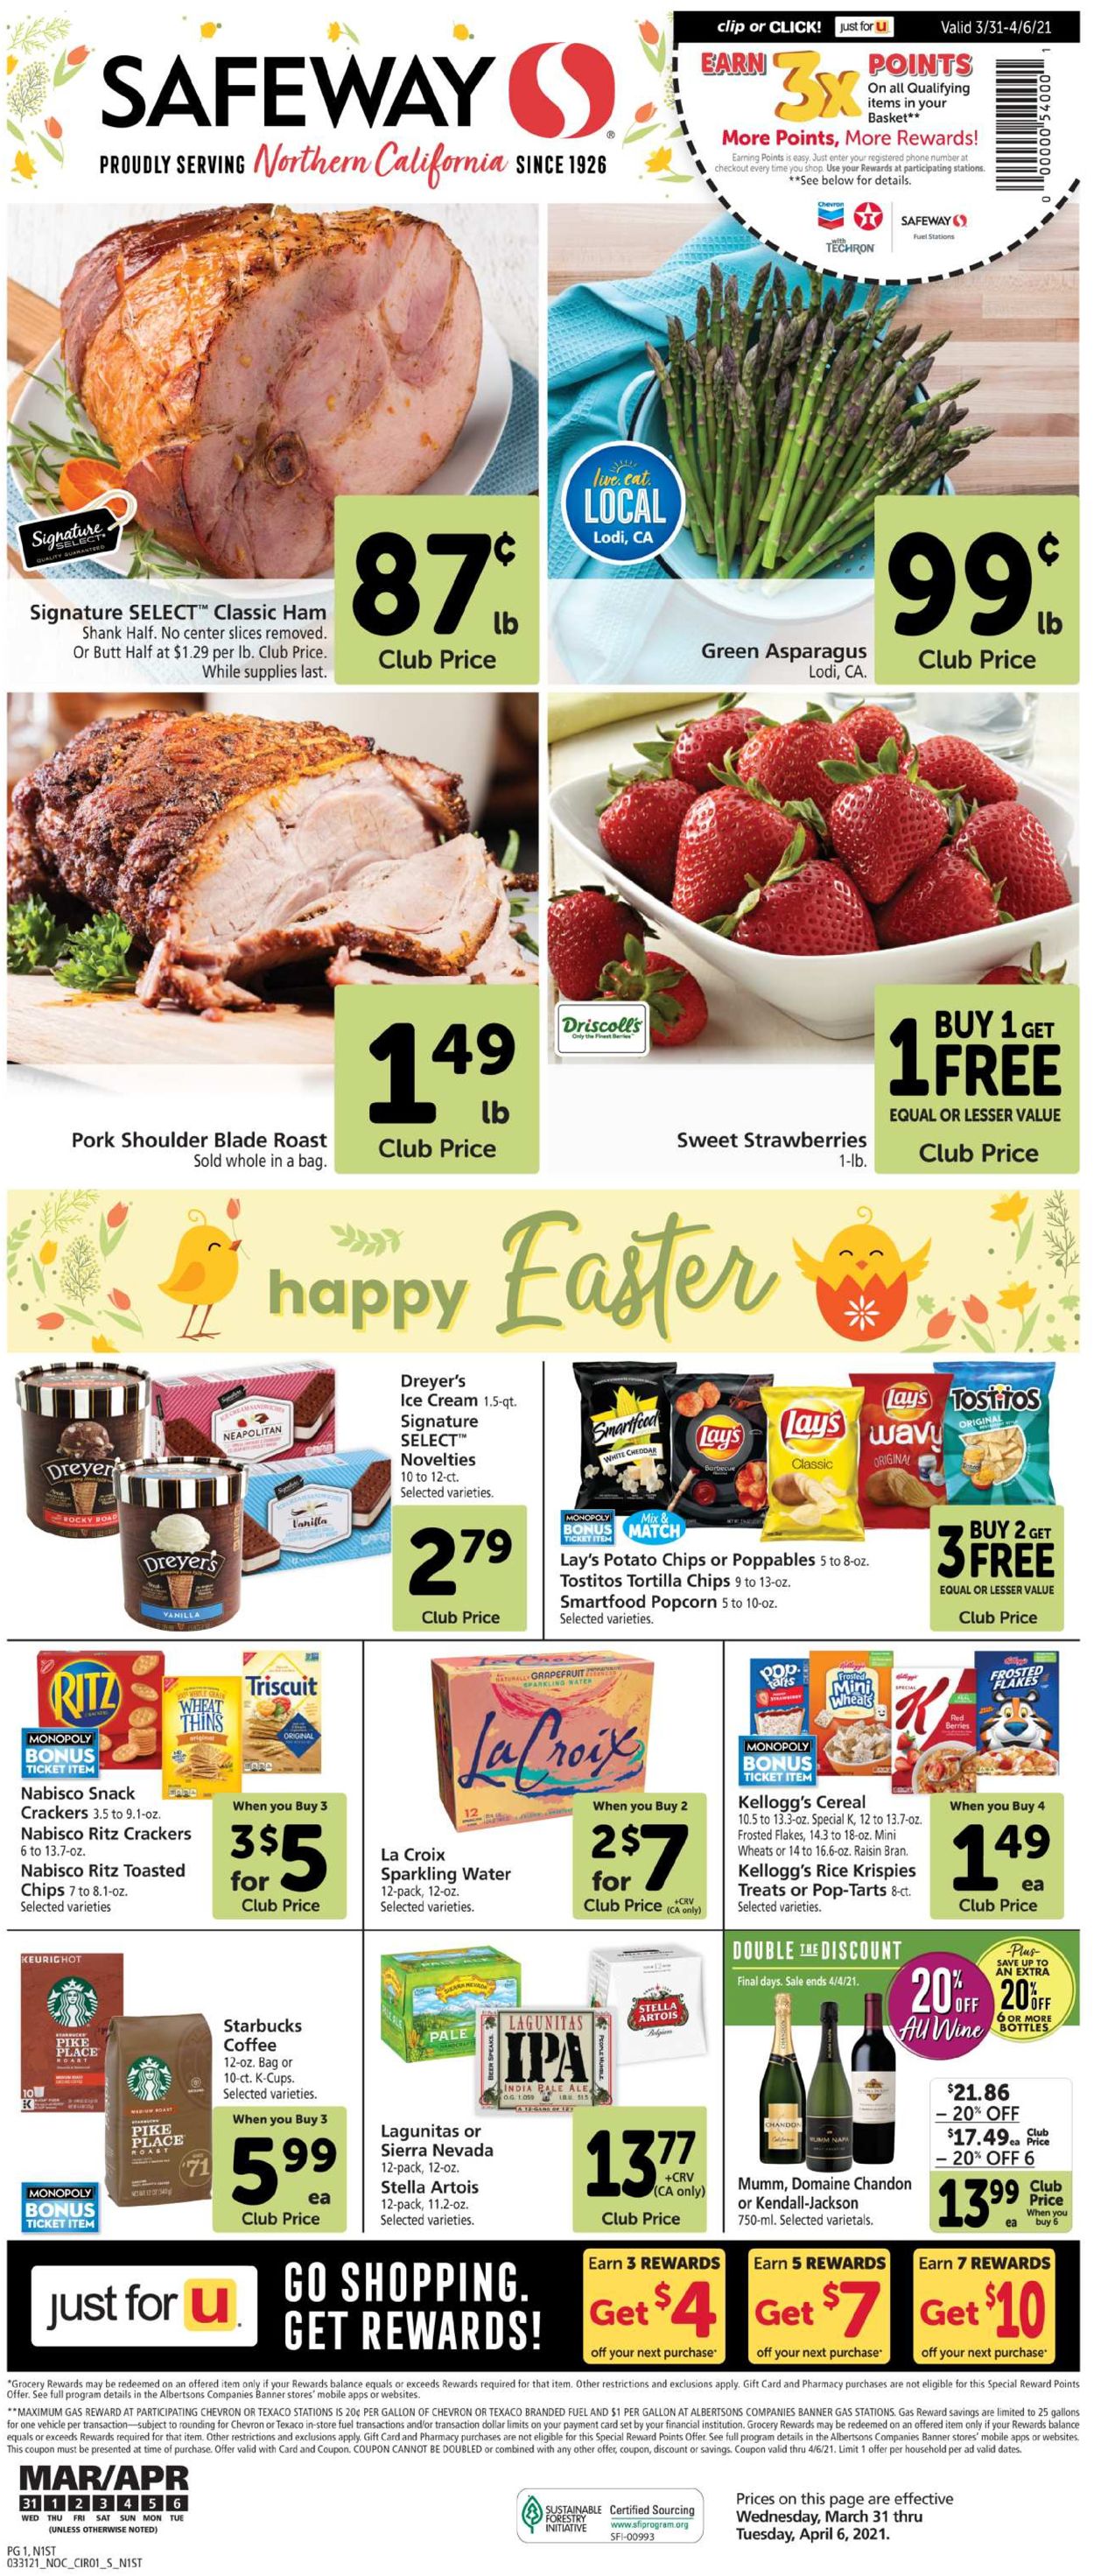 Safeway Easter 2021 ad Weekly Ad Circular - valid 03/31-04/06/2021